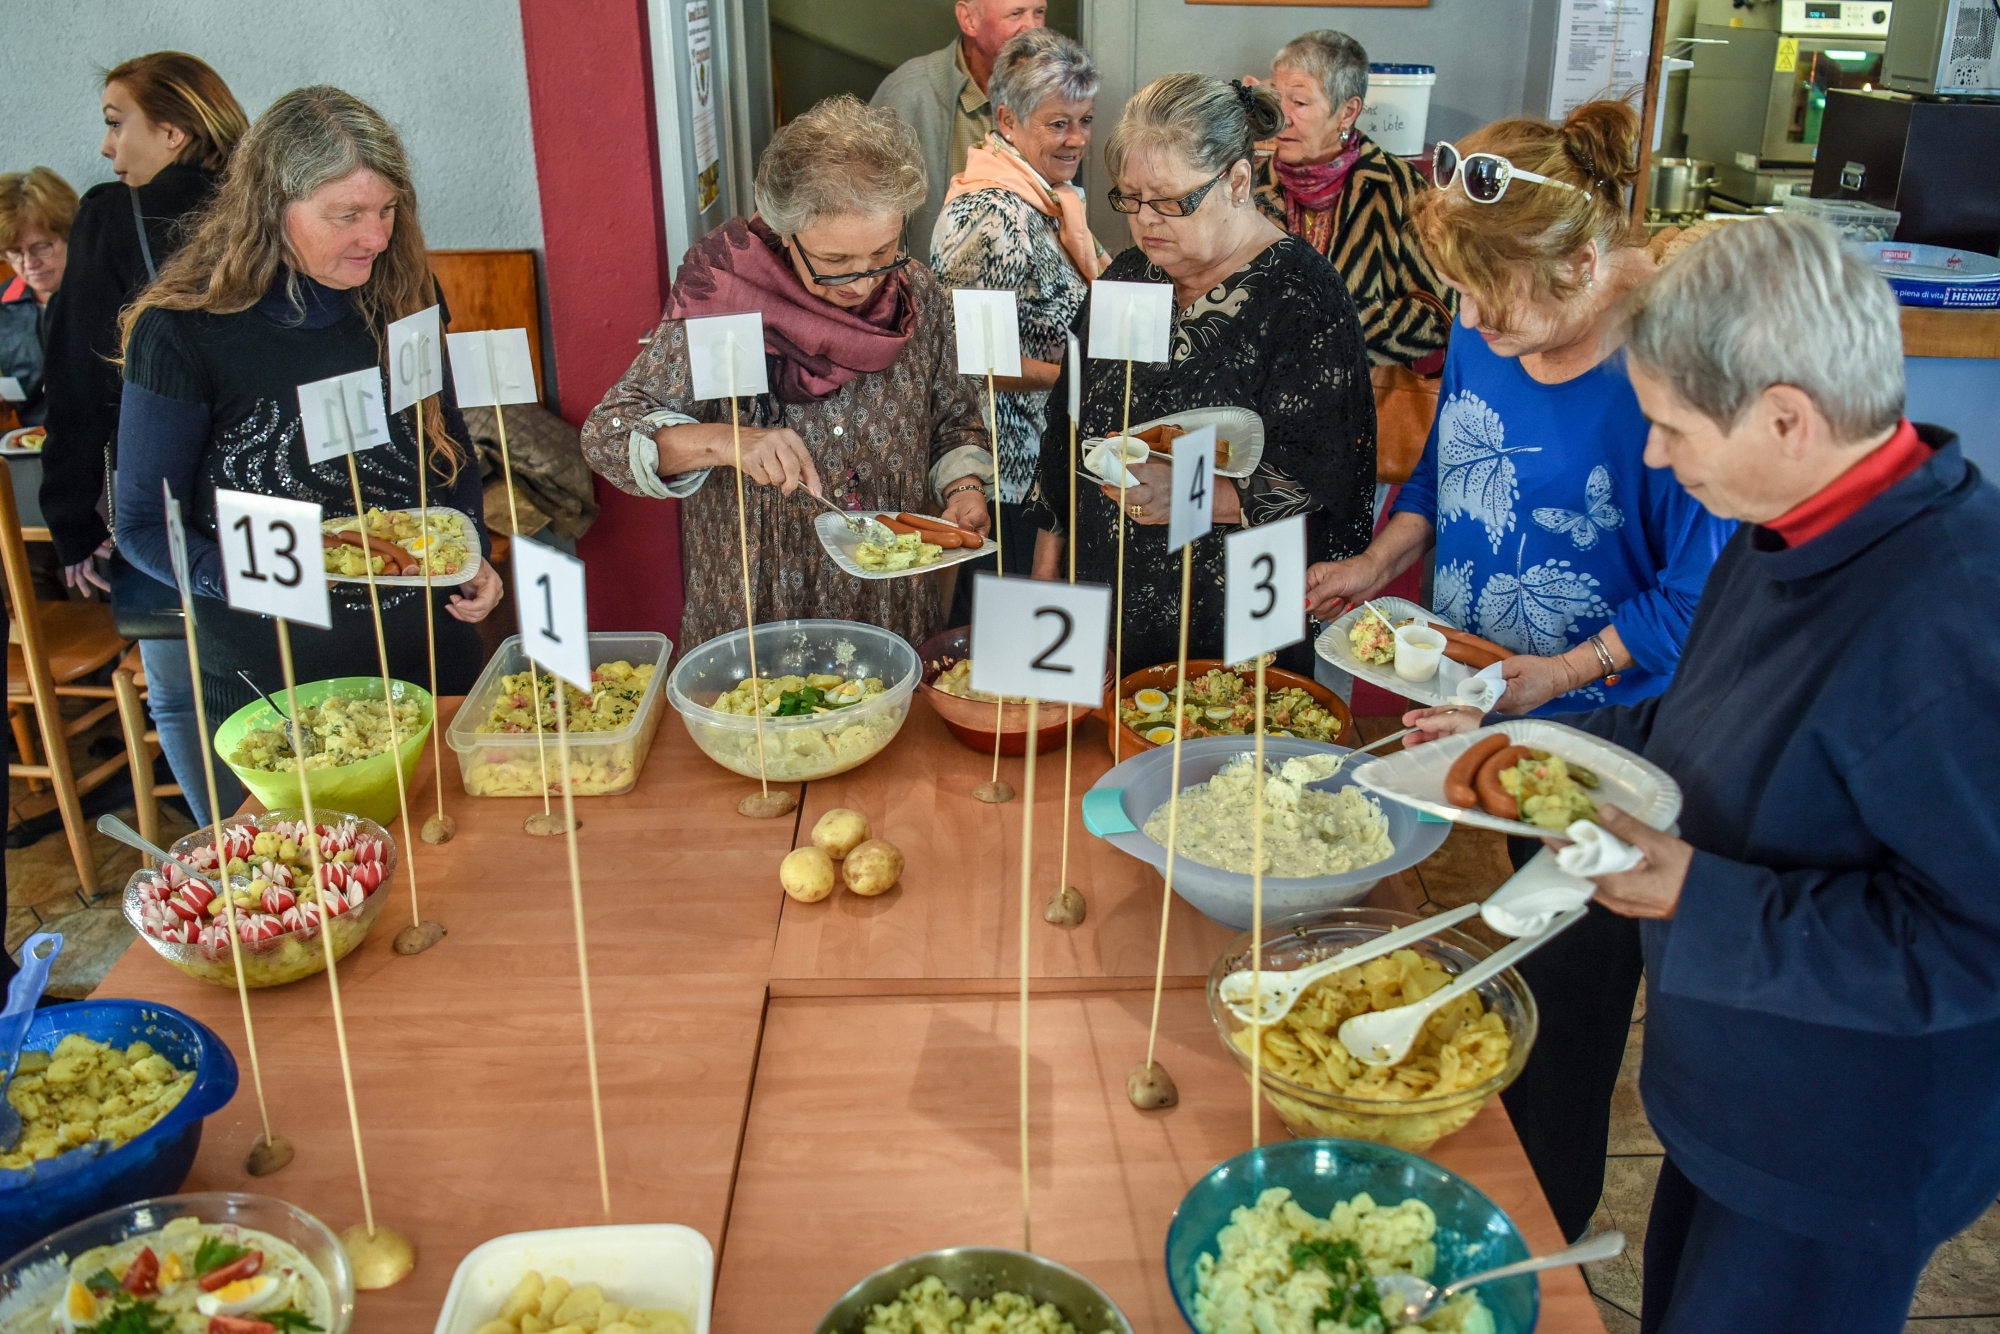 Concours de salade de patate.

LA CHAUX-DE-FONDS 29/09/2018
Photo: Christian Galley